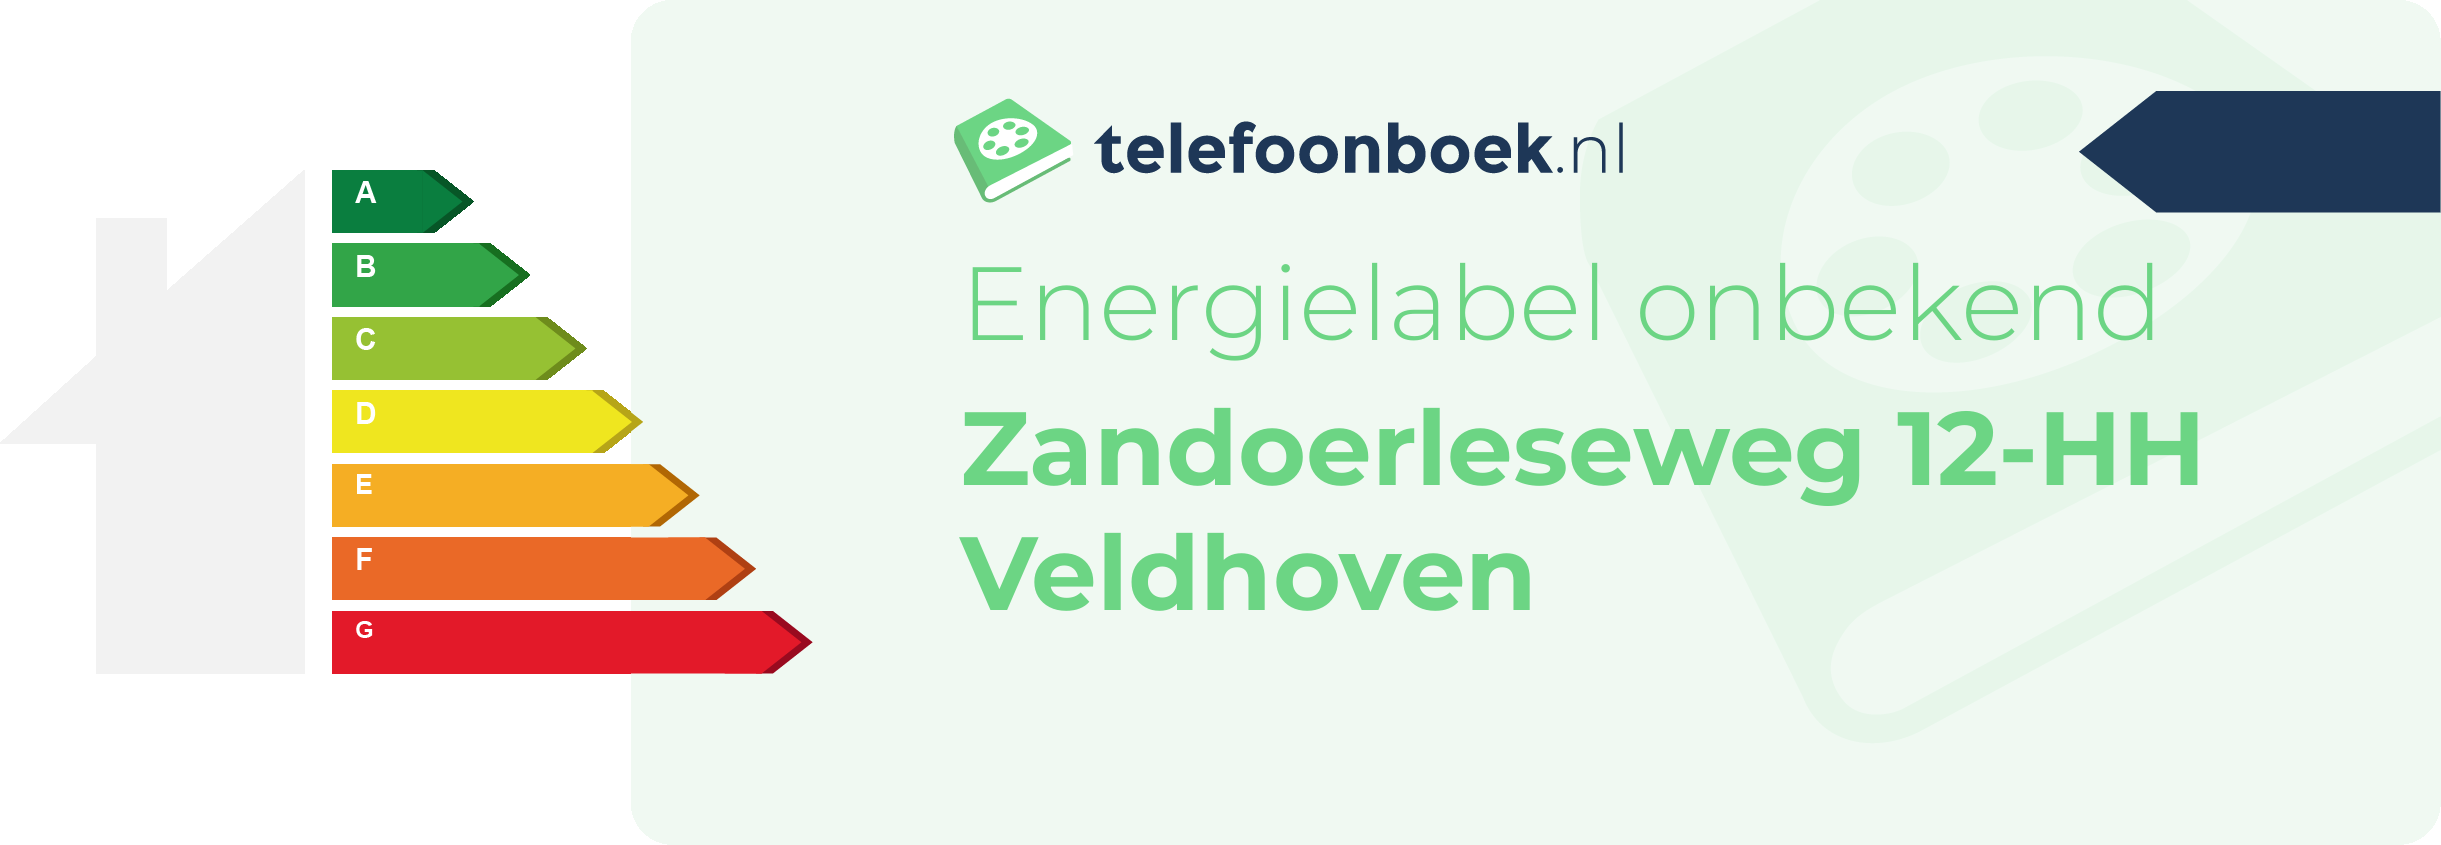 Energielabel Zandoerleseweg 12-HH Veldhoven